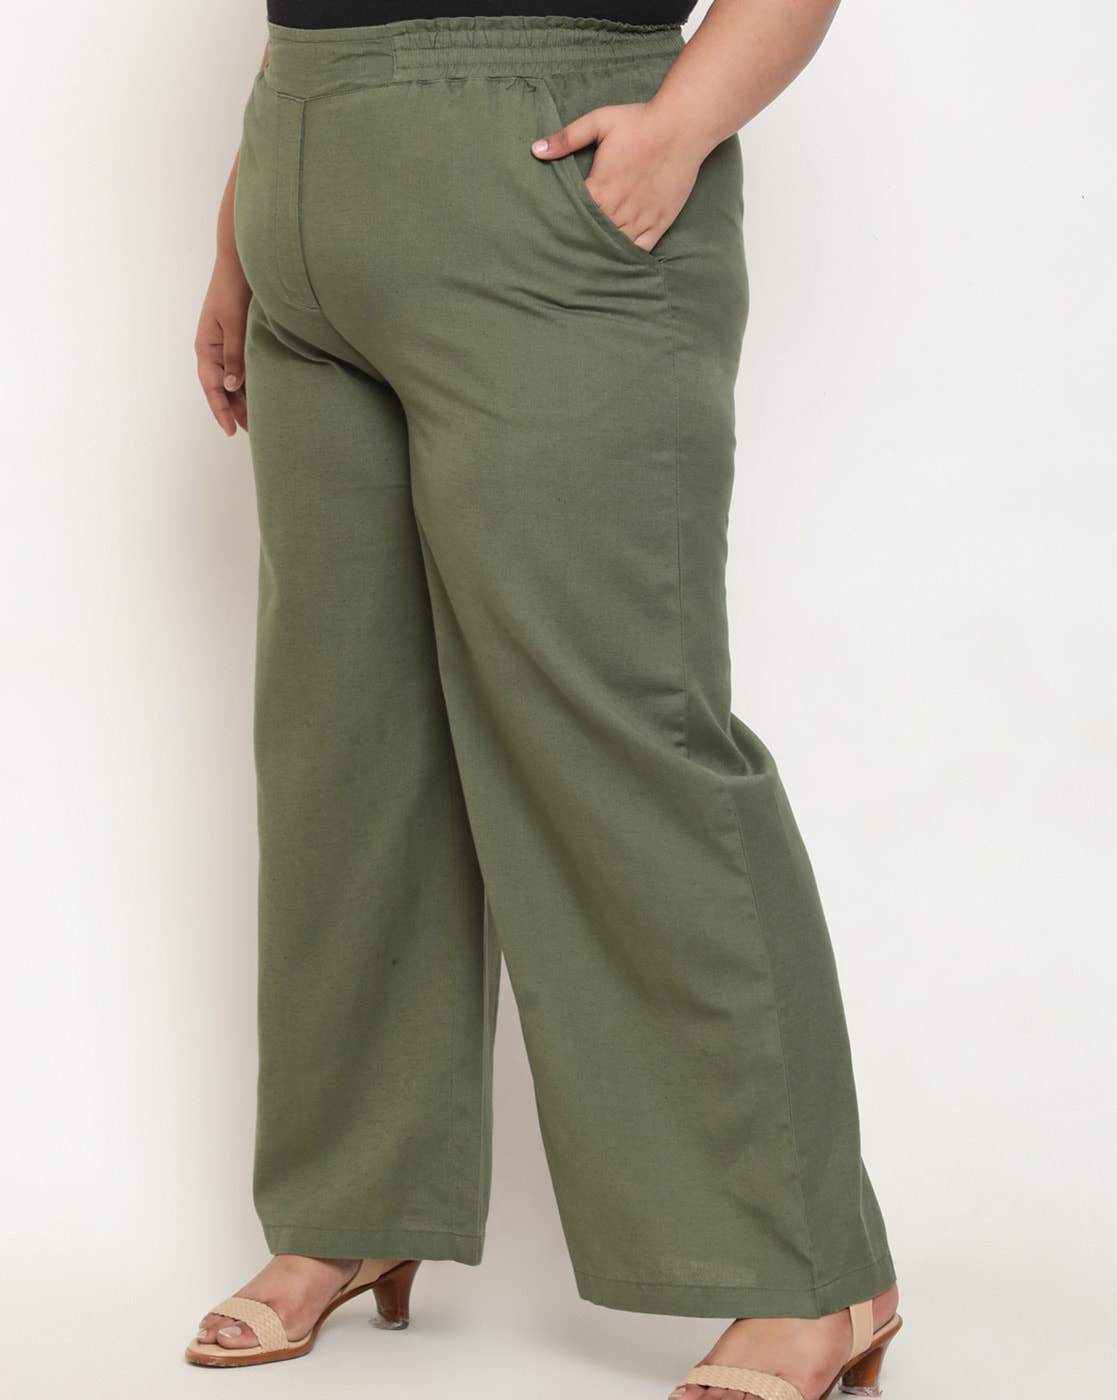 Buy Green Tie Up Pants Online In India.